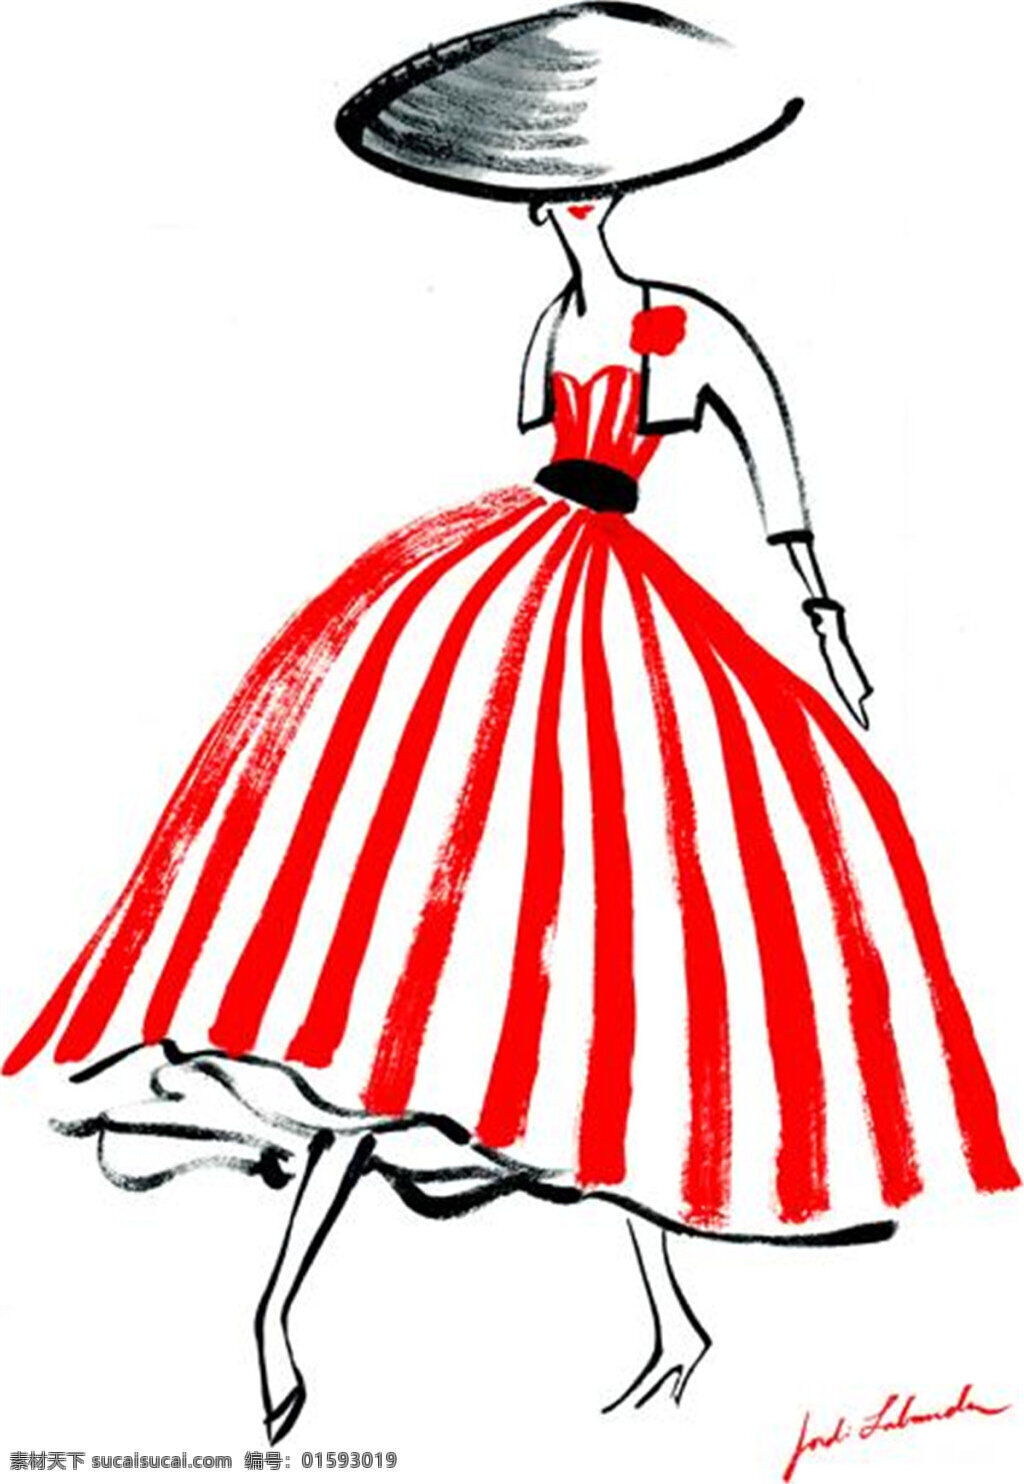 红色 竖 纹 蓬 裙 设计图 服装设计 时尚女装 职业女装 职业装 女装设计 效果图 短裙 衬衫 服装 服装效果图 连衣裙 竖条